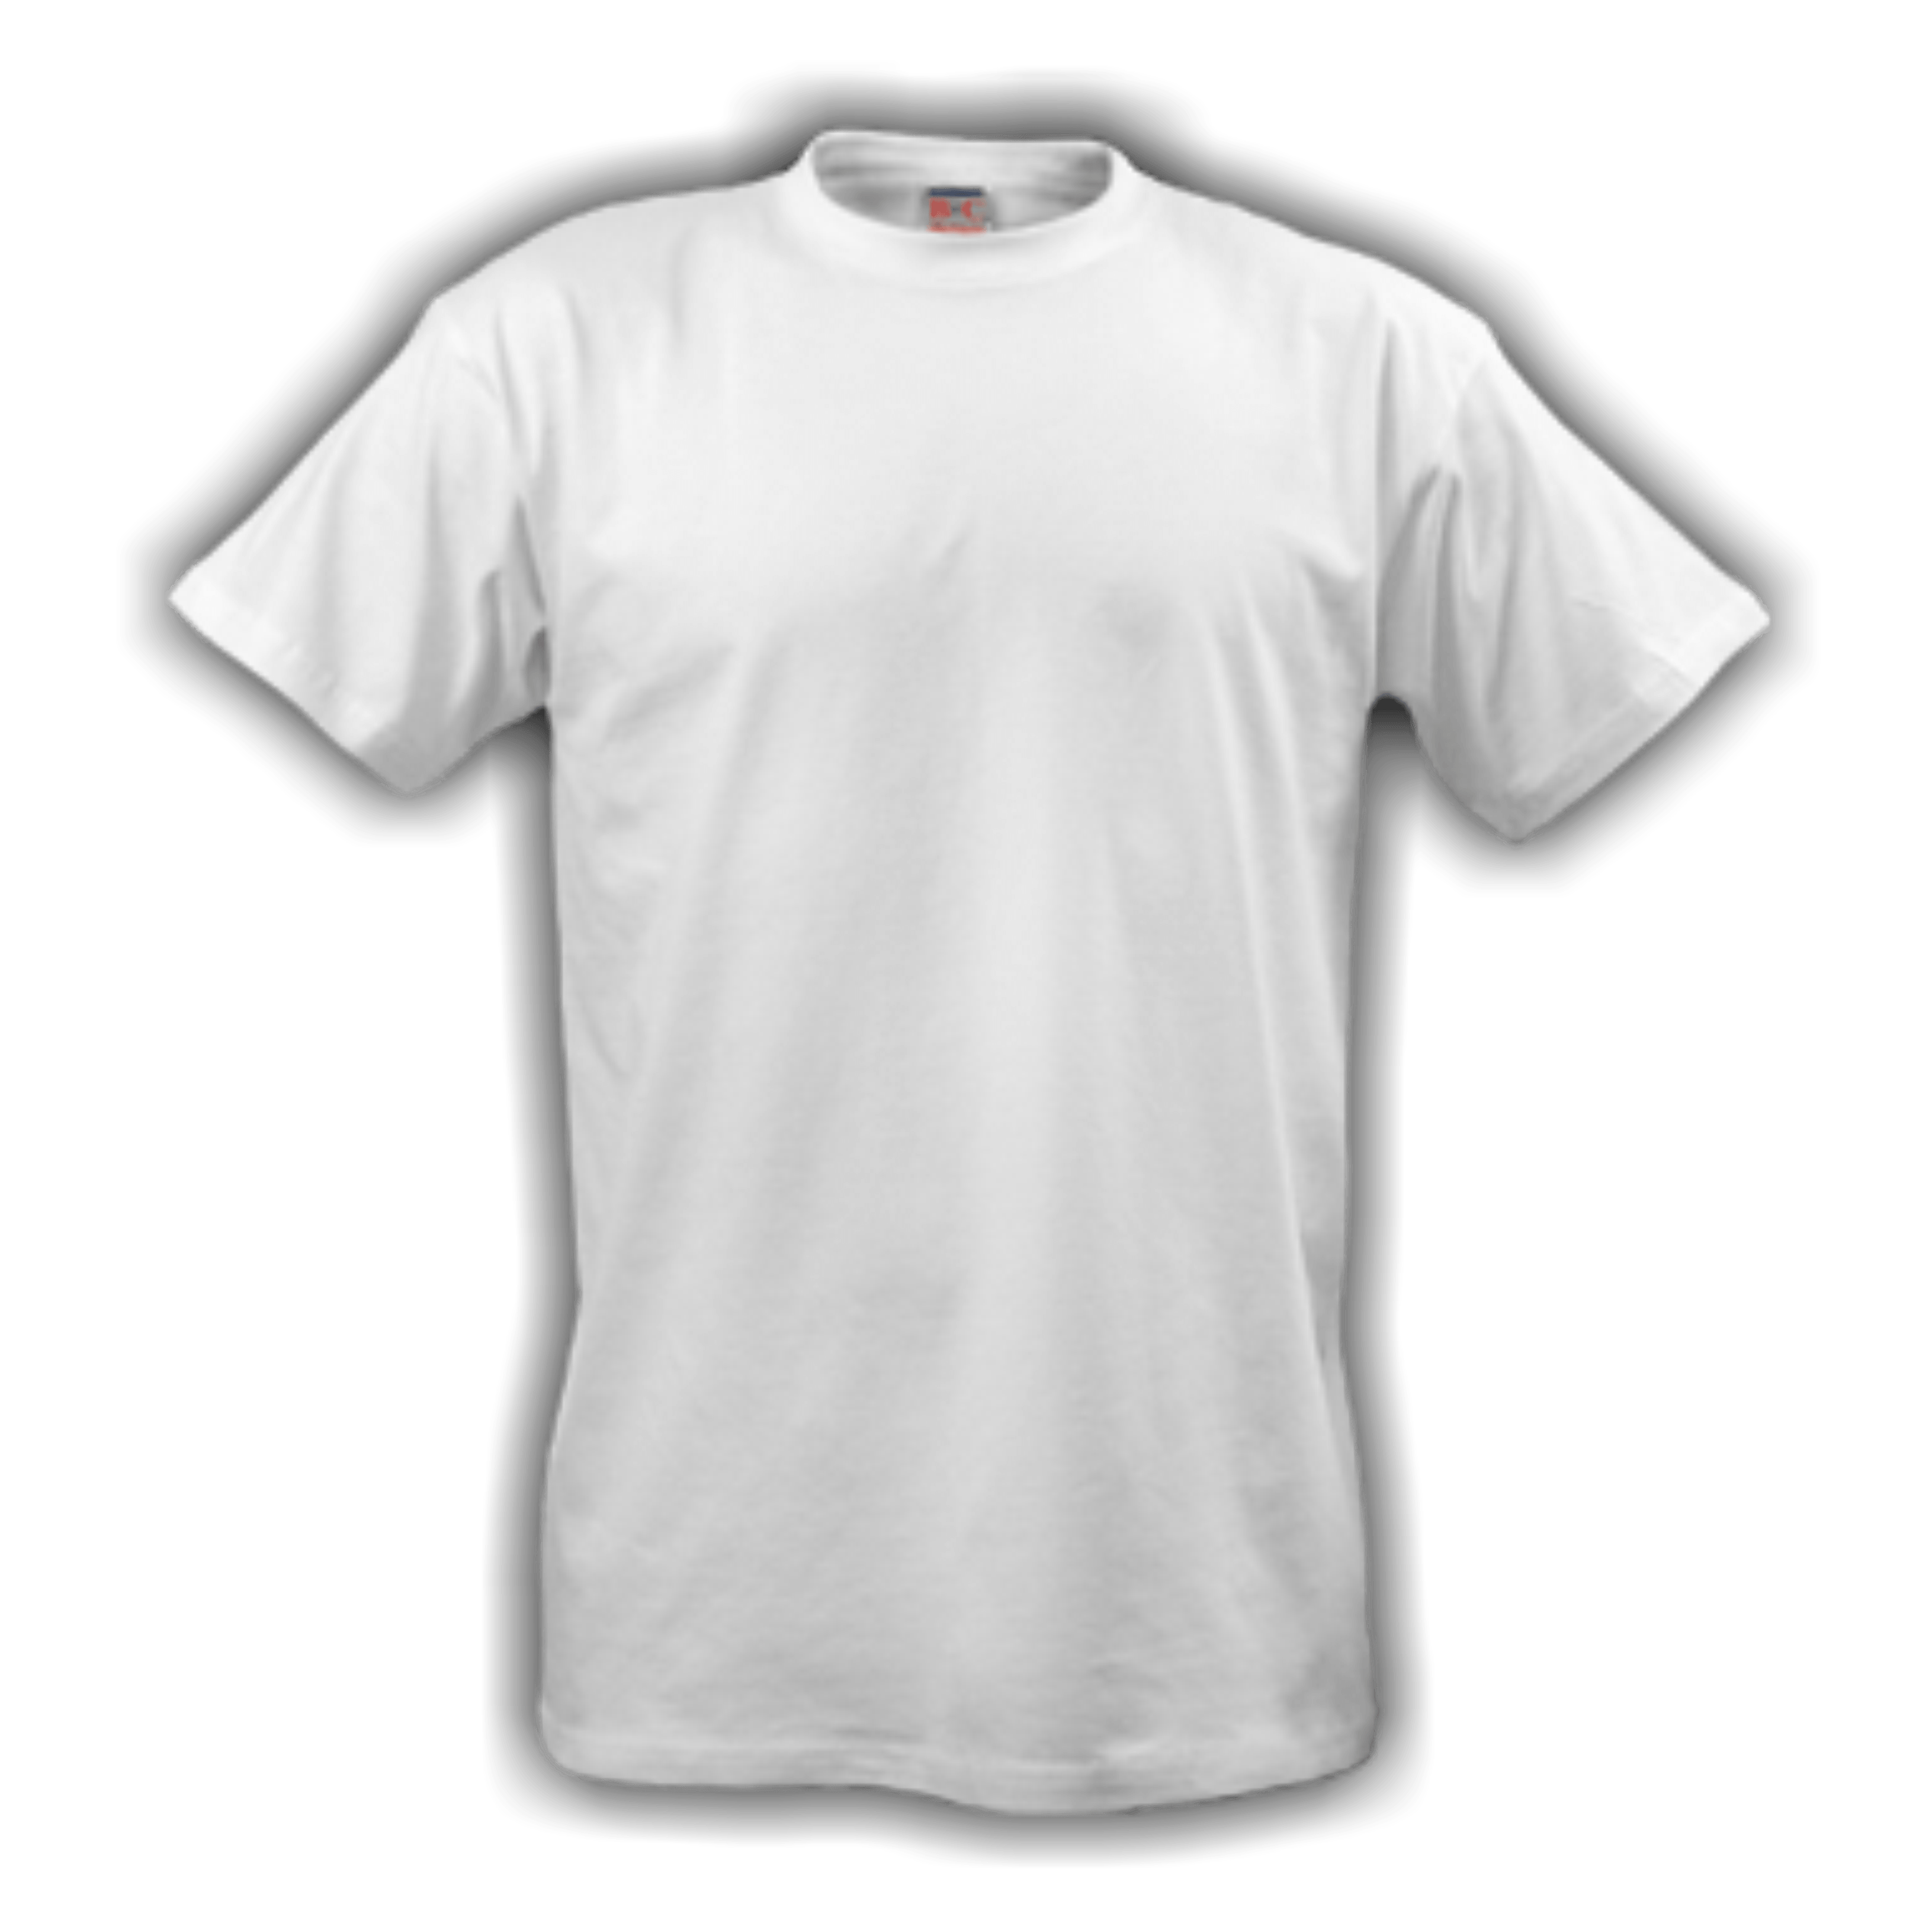 støn specifikation gentagelse T Shirt - Tshirt PNG Transparent - Free Transparent PNG Logos